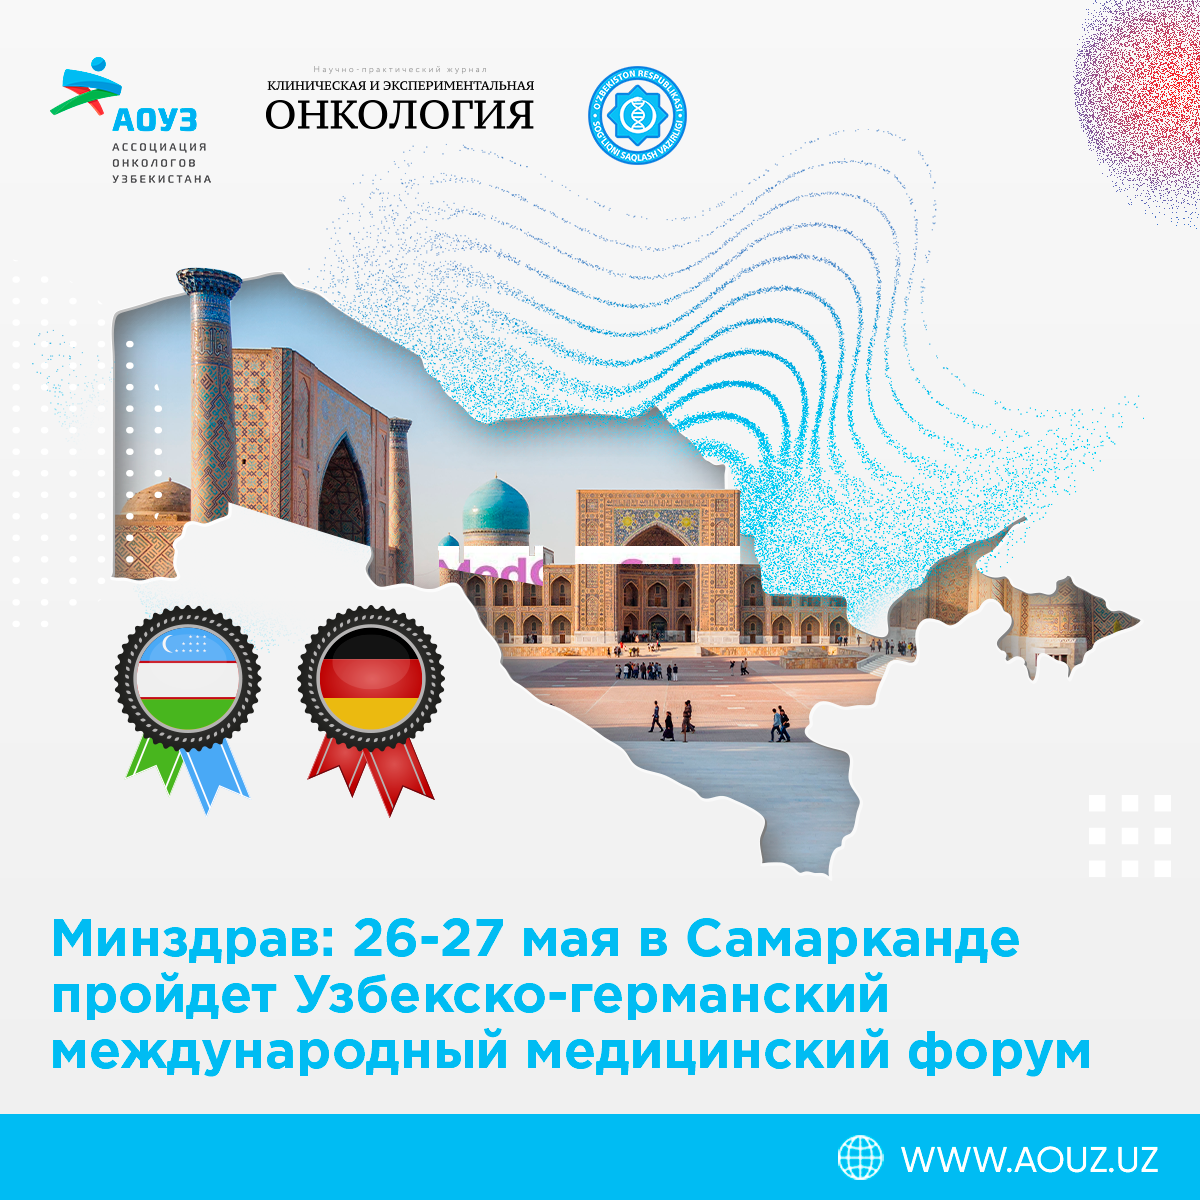 Узбекско-германский международный медицинский форум. 